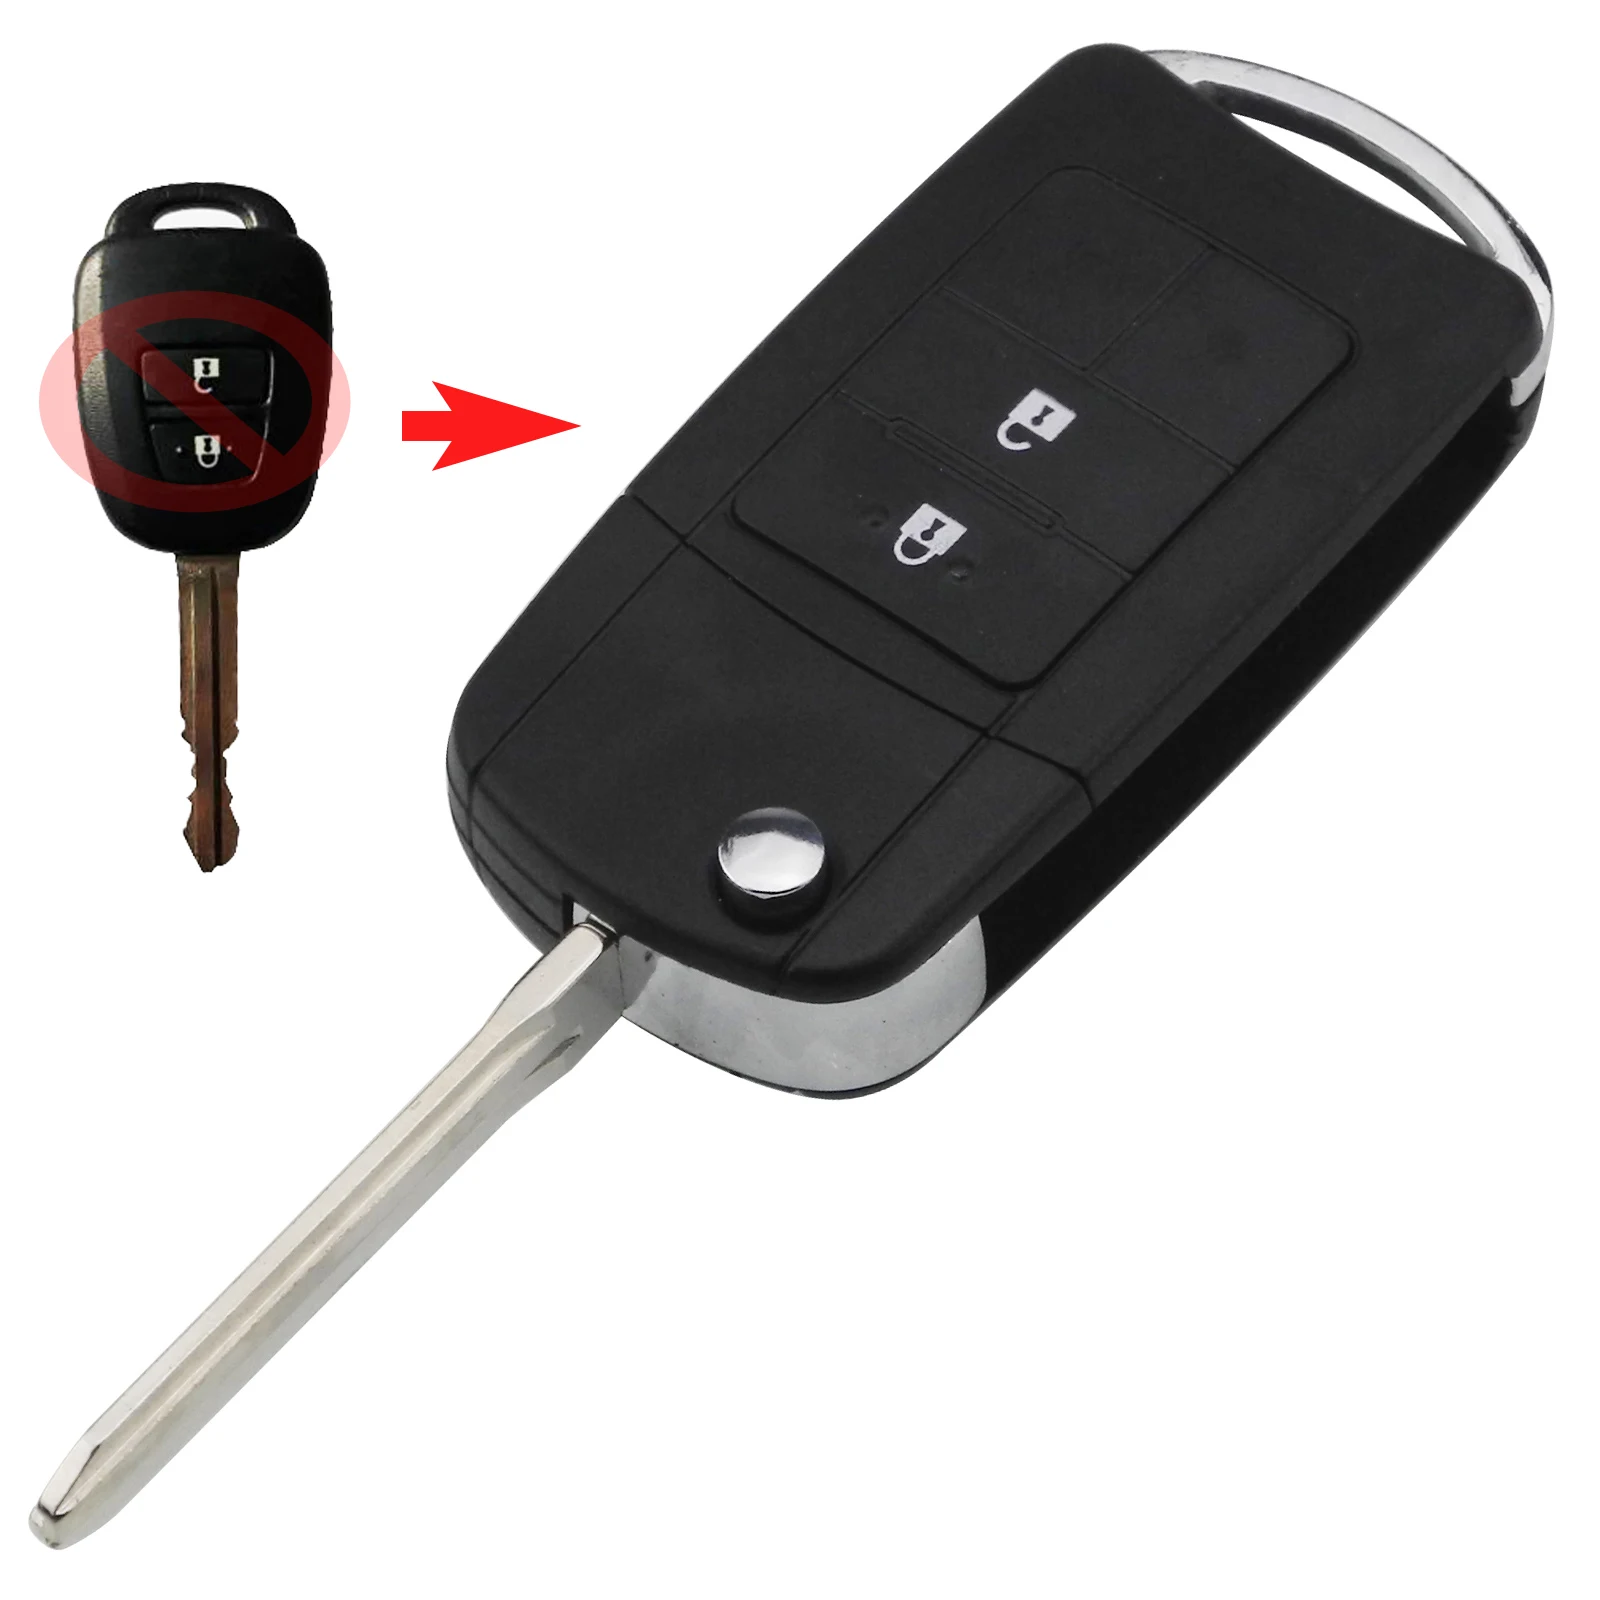 Jinyuqin модифицированный дистанционный ключ для автомобиля 2/3/4 пуговицы складной удаленное Управление ключ чехол для TOYOTA Reiz Corolla Camry TOYOTA Previa RAV - Количество кнопок: 2Buttons